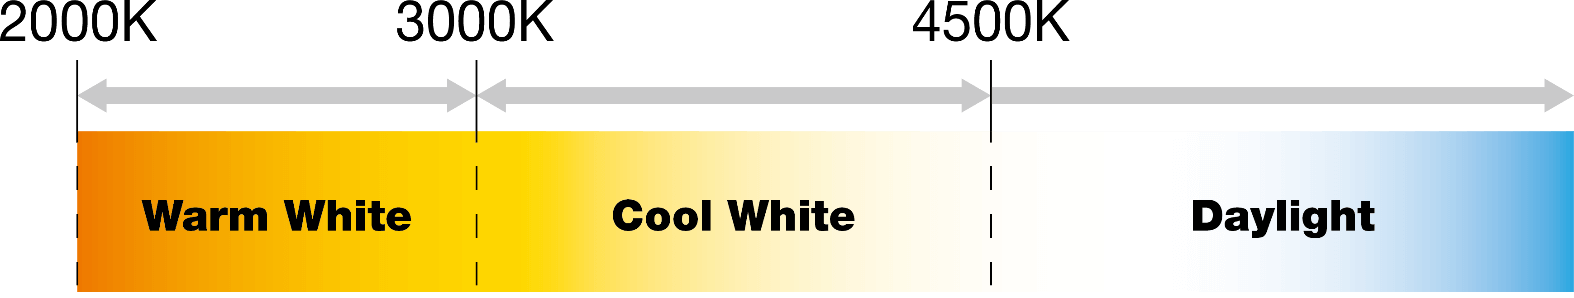 cct cool white to warm white